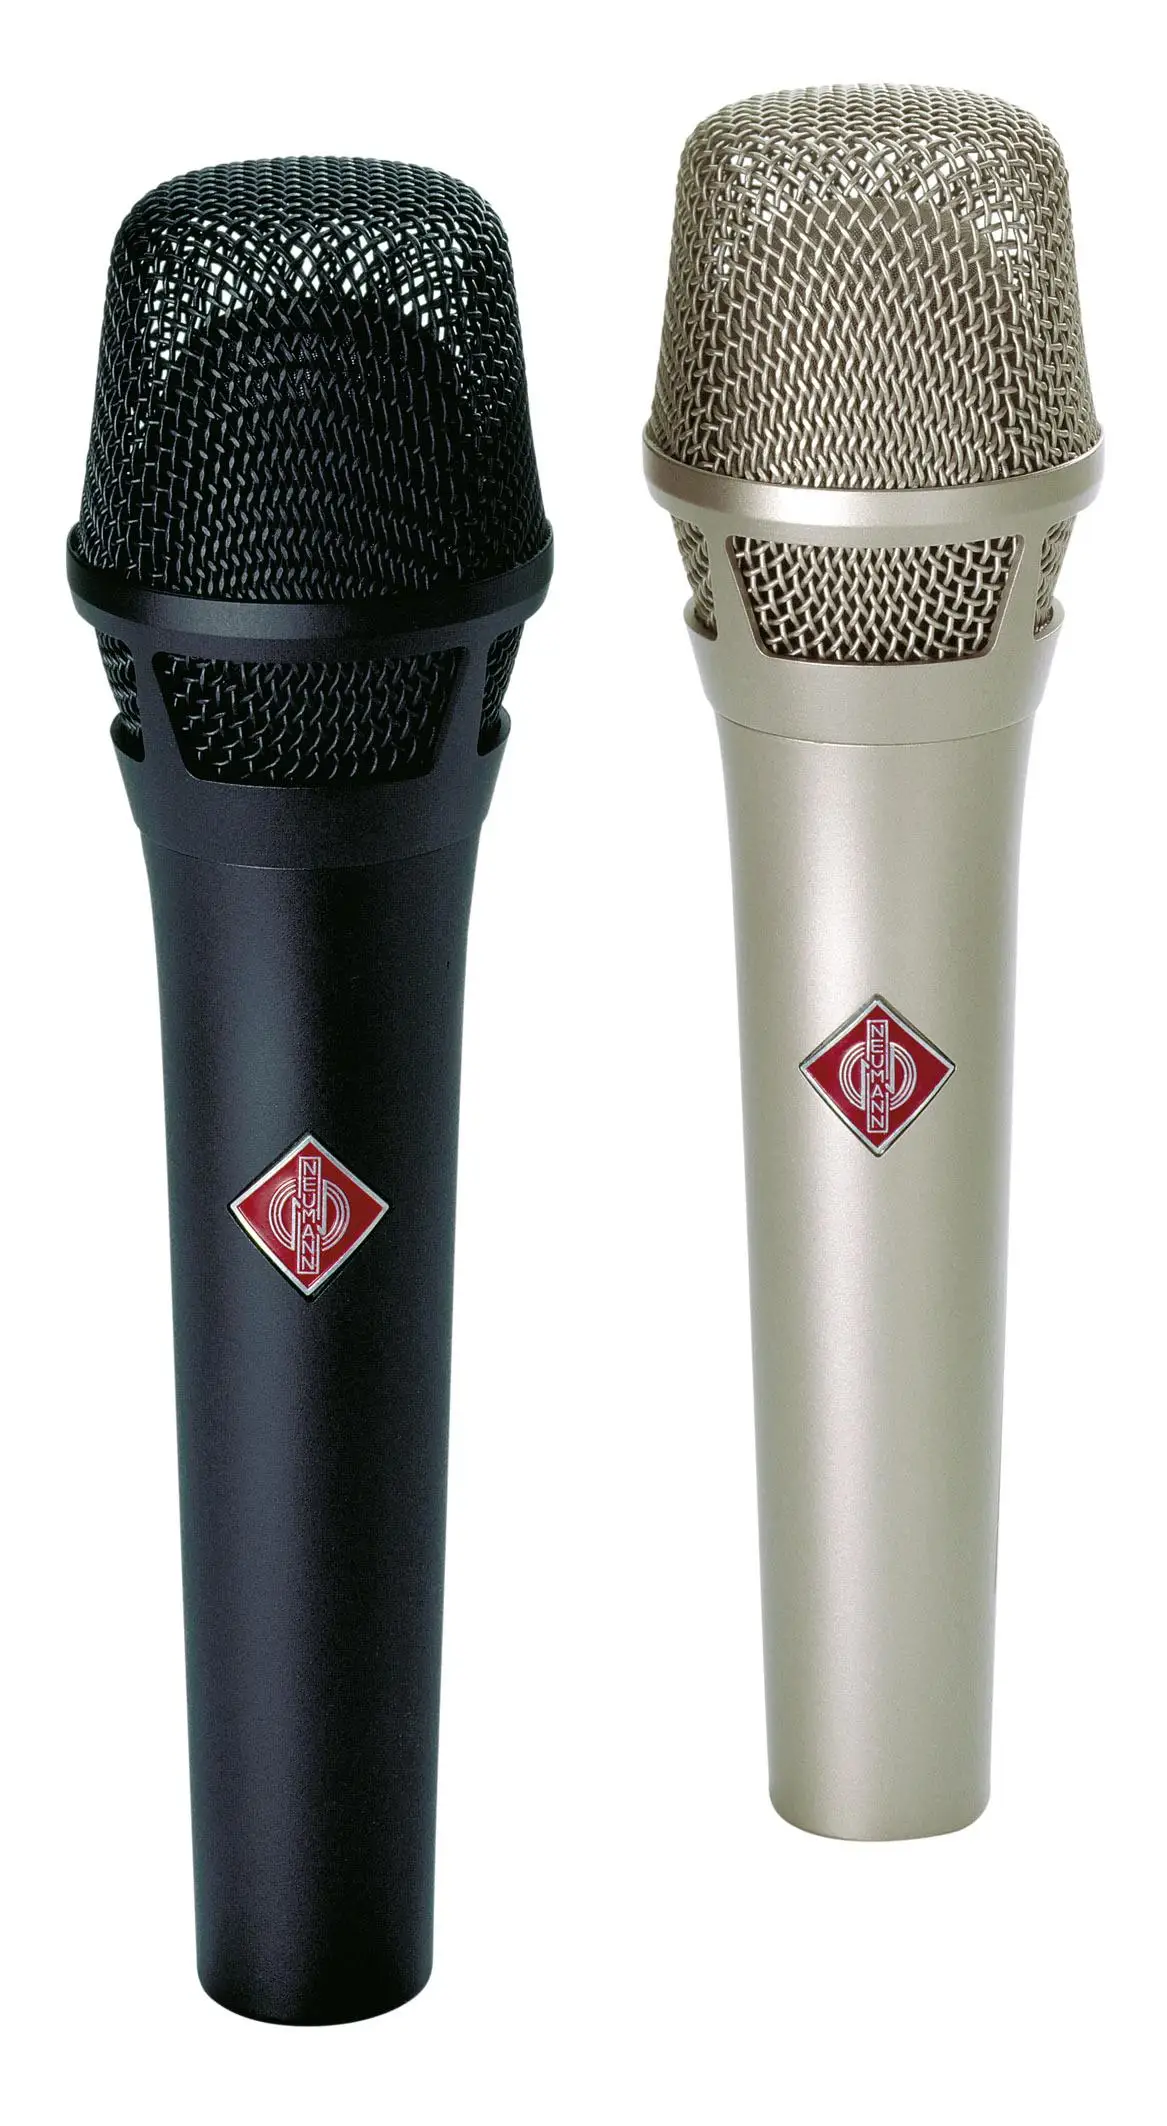 

Для стильного микрофона NEUMANN, ручной микрофон